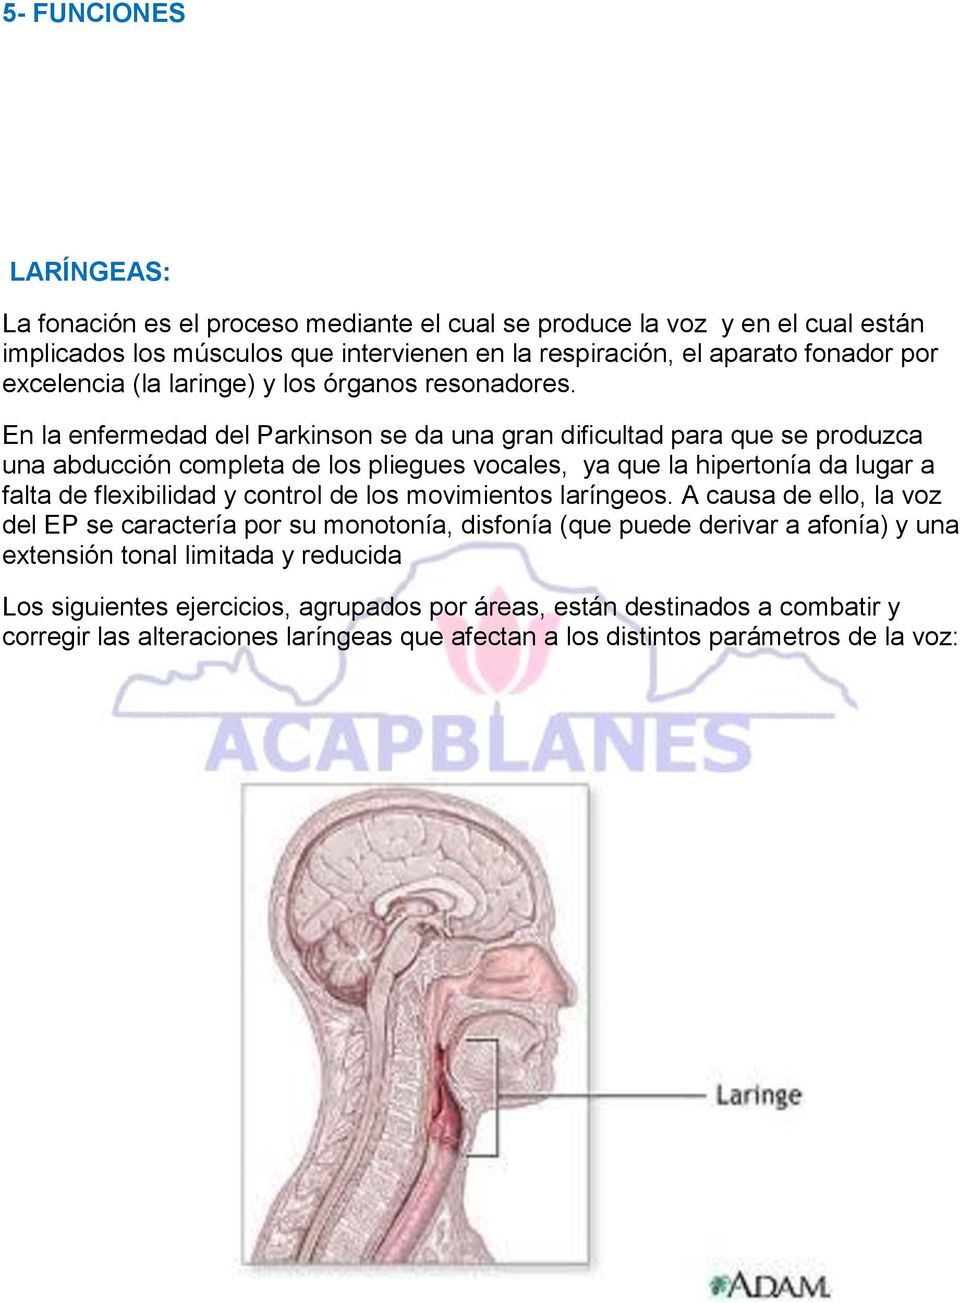 En la enfermedad del Parkinson se da una gran dificultad para que se produzca una abducción completa de los pliegues vocales, ya que la hipertonía da lugar a falta de flexibilidad y control